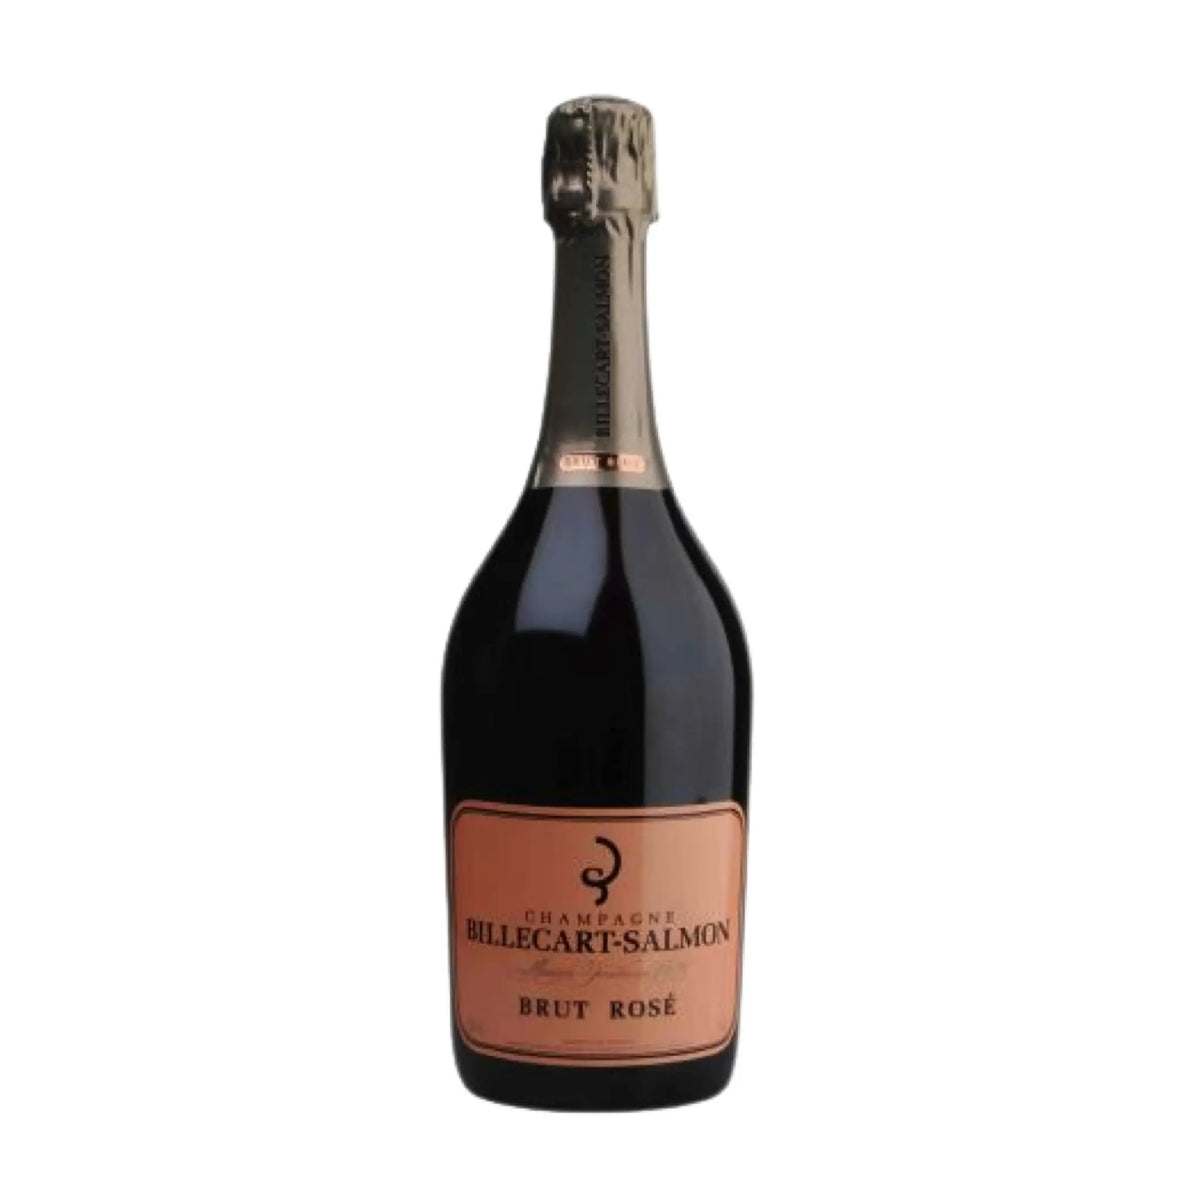 Billecart-Salmon-Schaumwein-Pinot Noir, Pinot Meunier, Chardonnay-Rosé Brut Champagne AOC-WINECOM